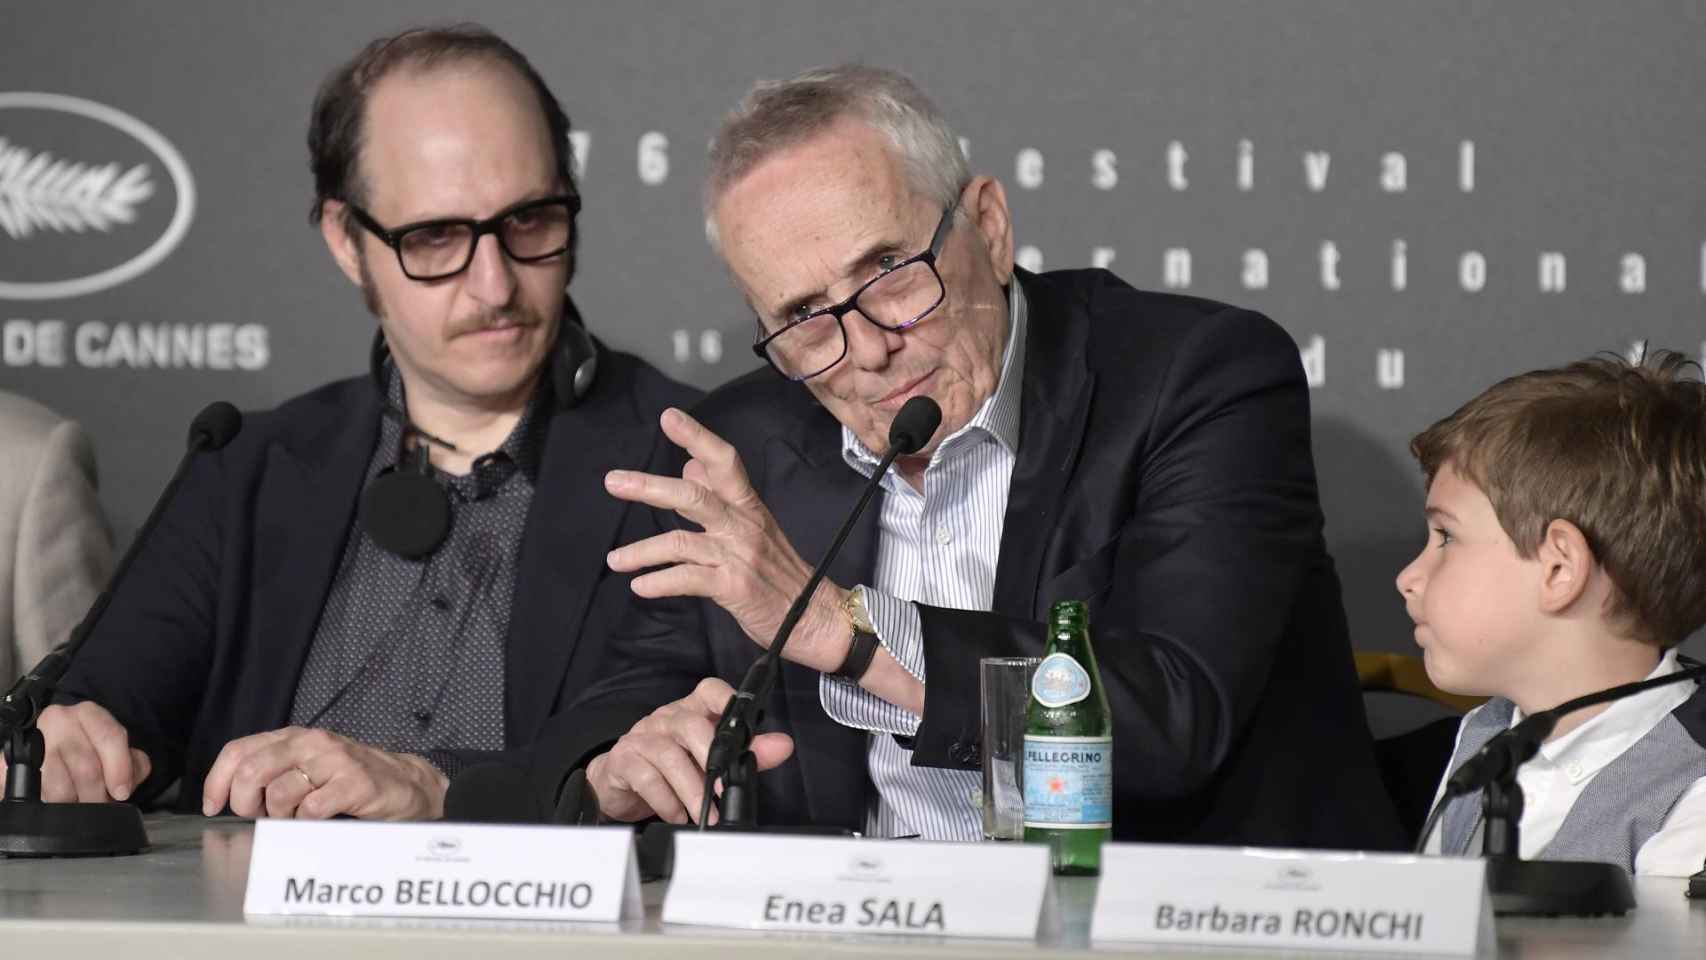 Fausto Russo Alesi, Marco Bellocchio y Enea Sala en la coferencia de prensa de la presentación de 'Rapito' en Cannes. Foto: EFE/Kristy Sparow/Getty Images